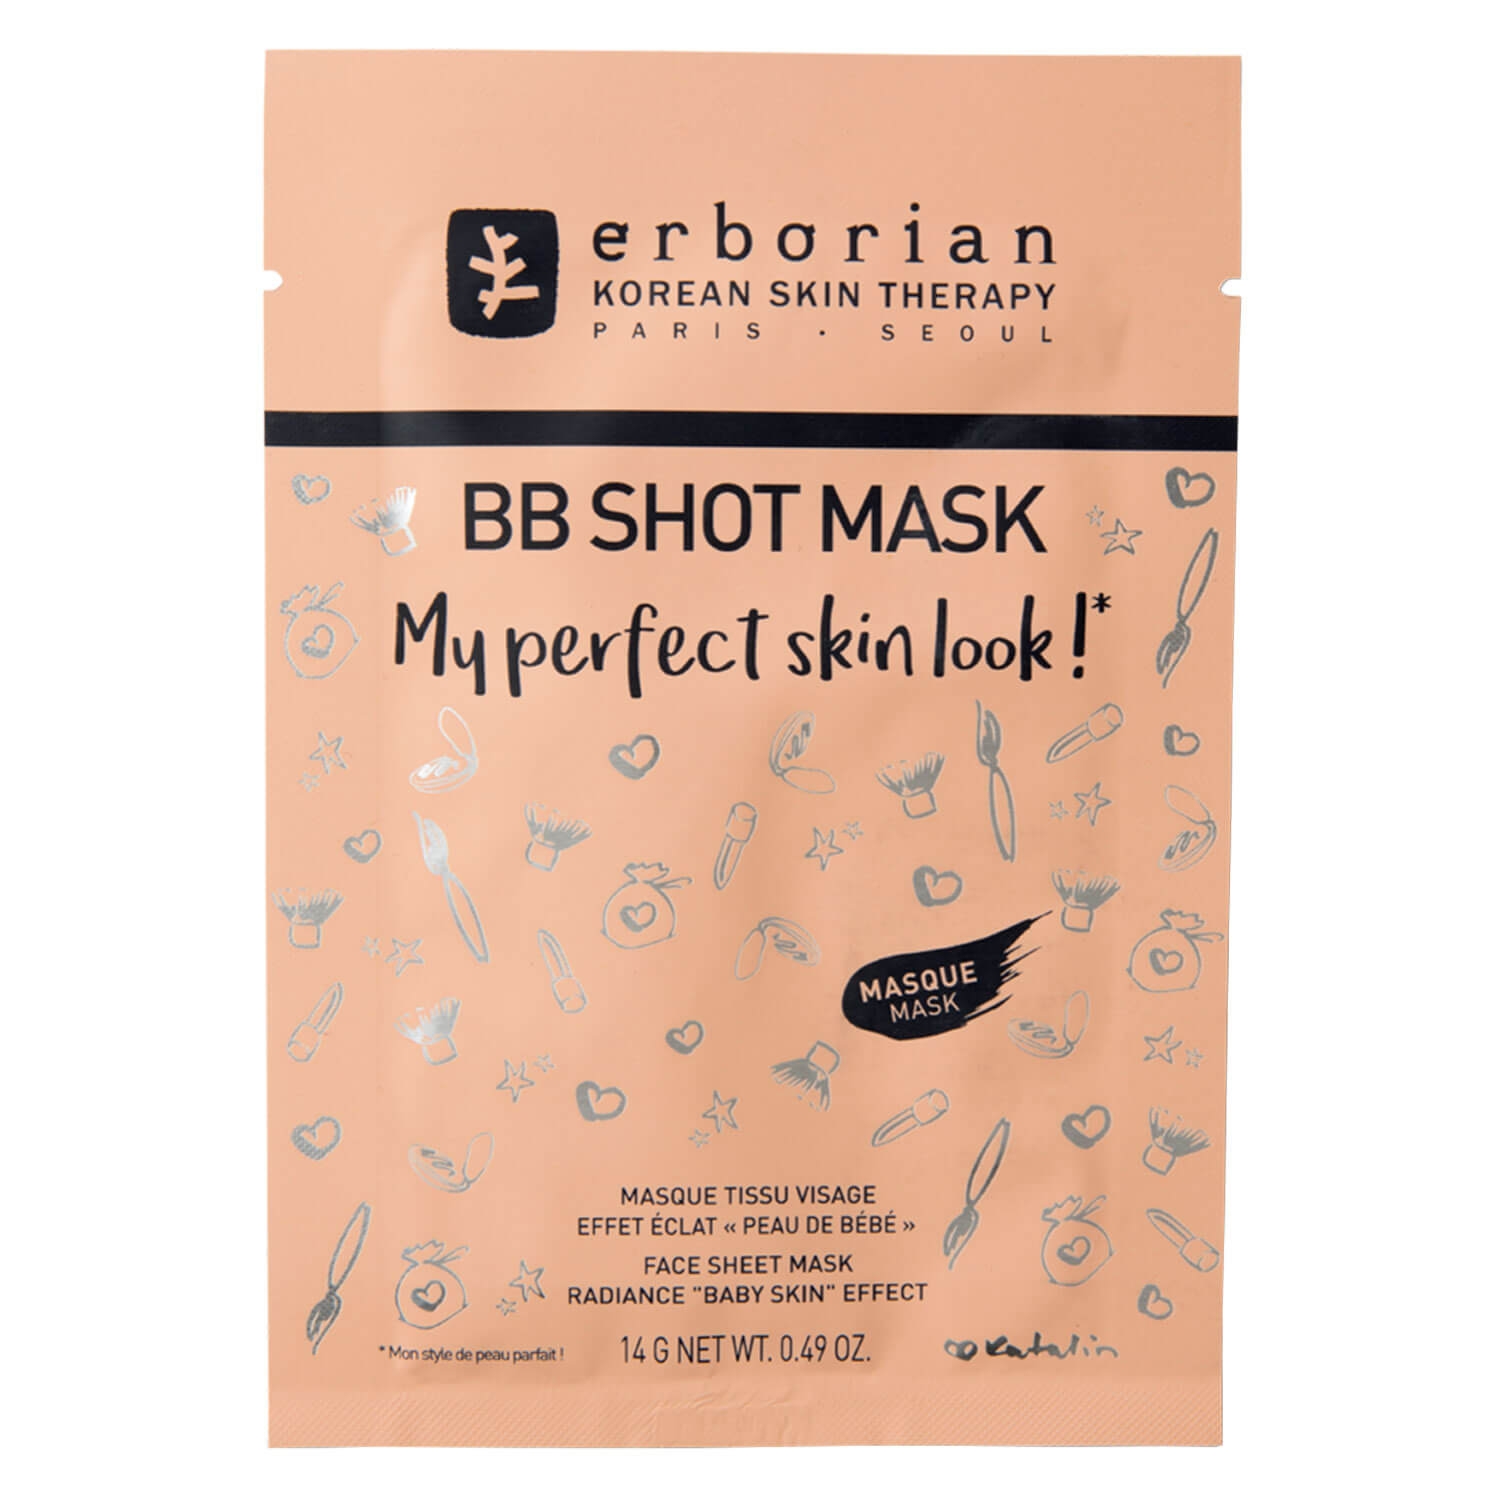 Produktbild von erborian BB - Shot Mask